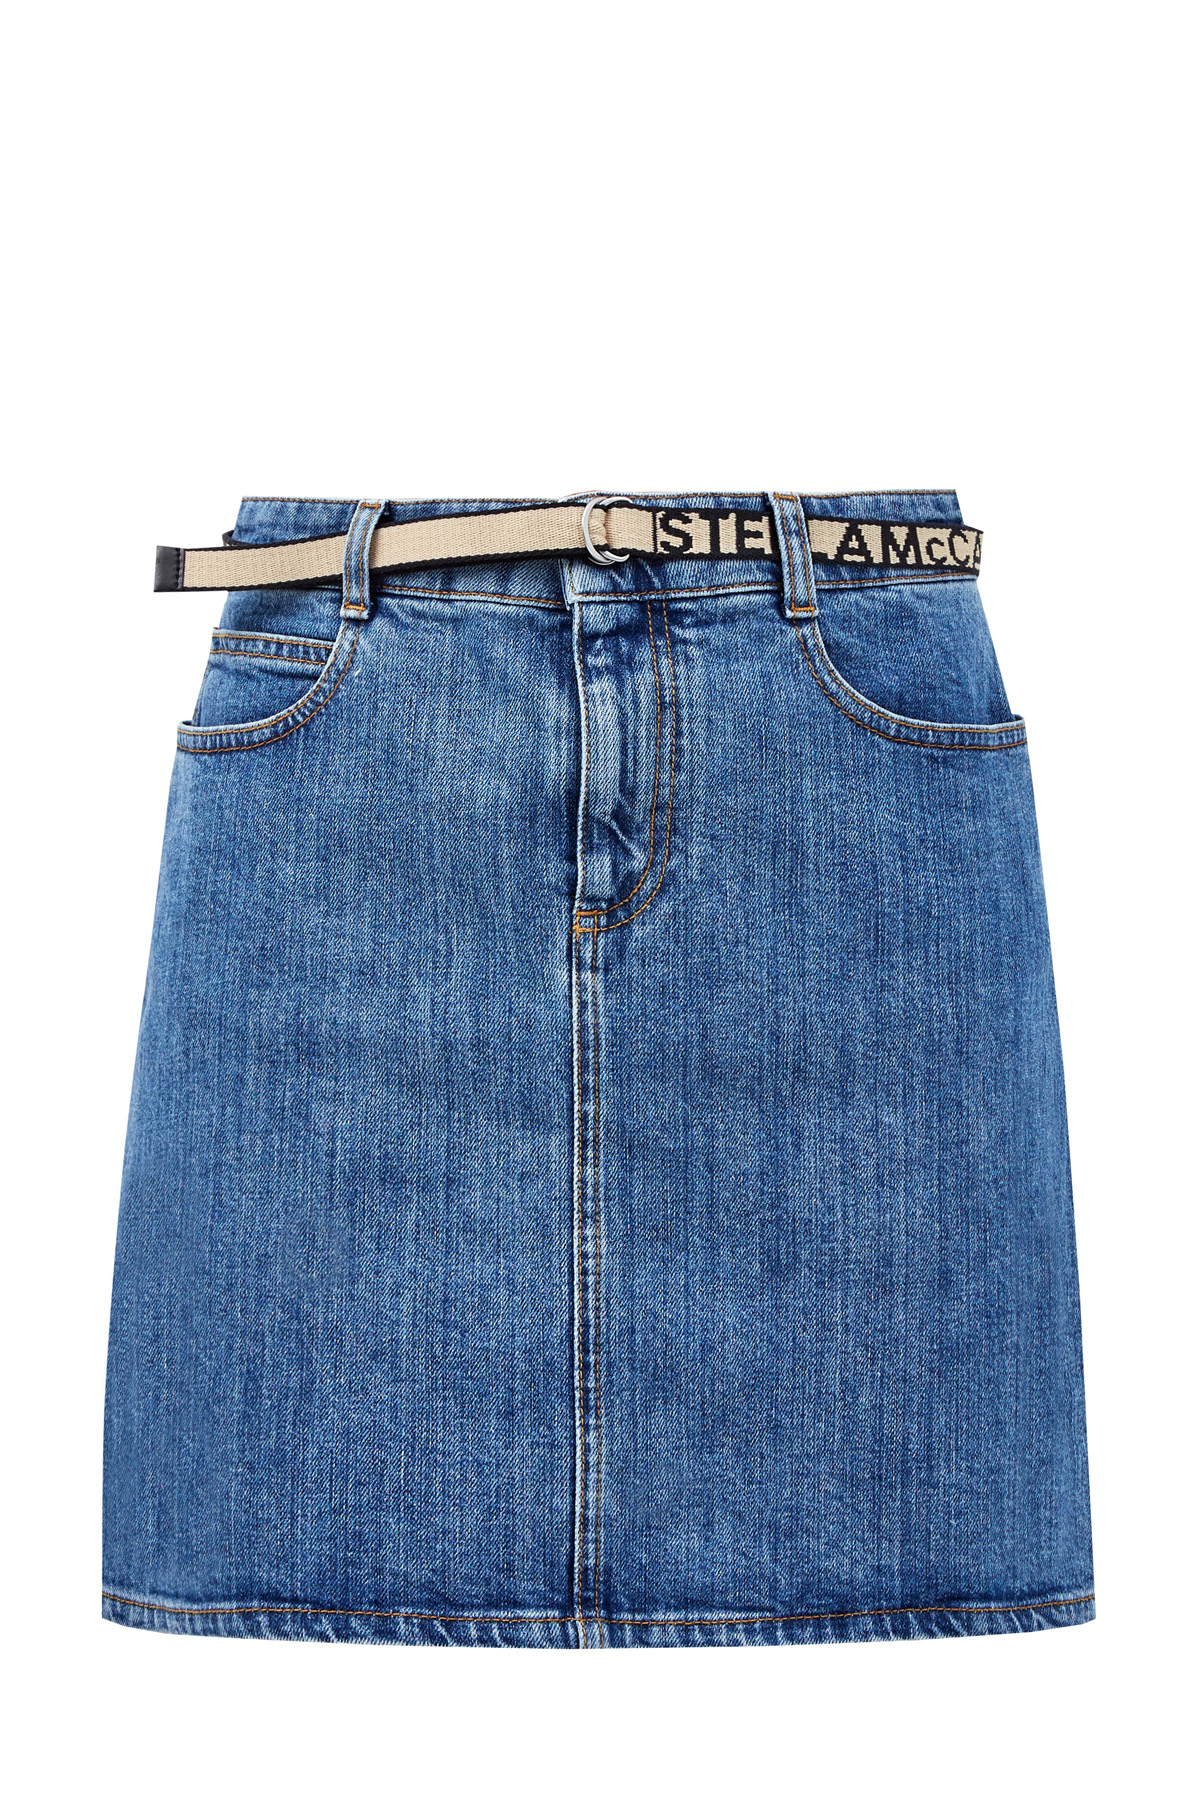 Джинсовая юбка-мини с принтованным поясом STELLA McCARTNEY, цвет синий, размер 44;38 - фото 1